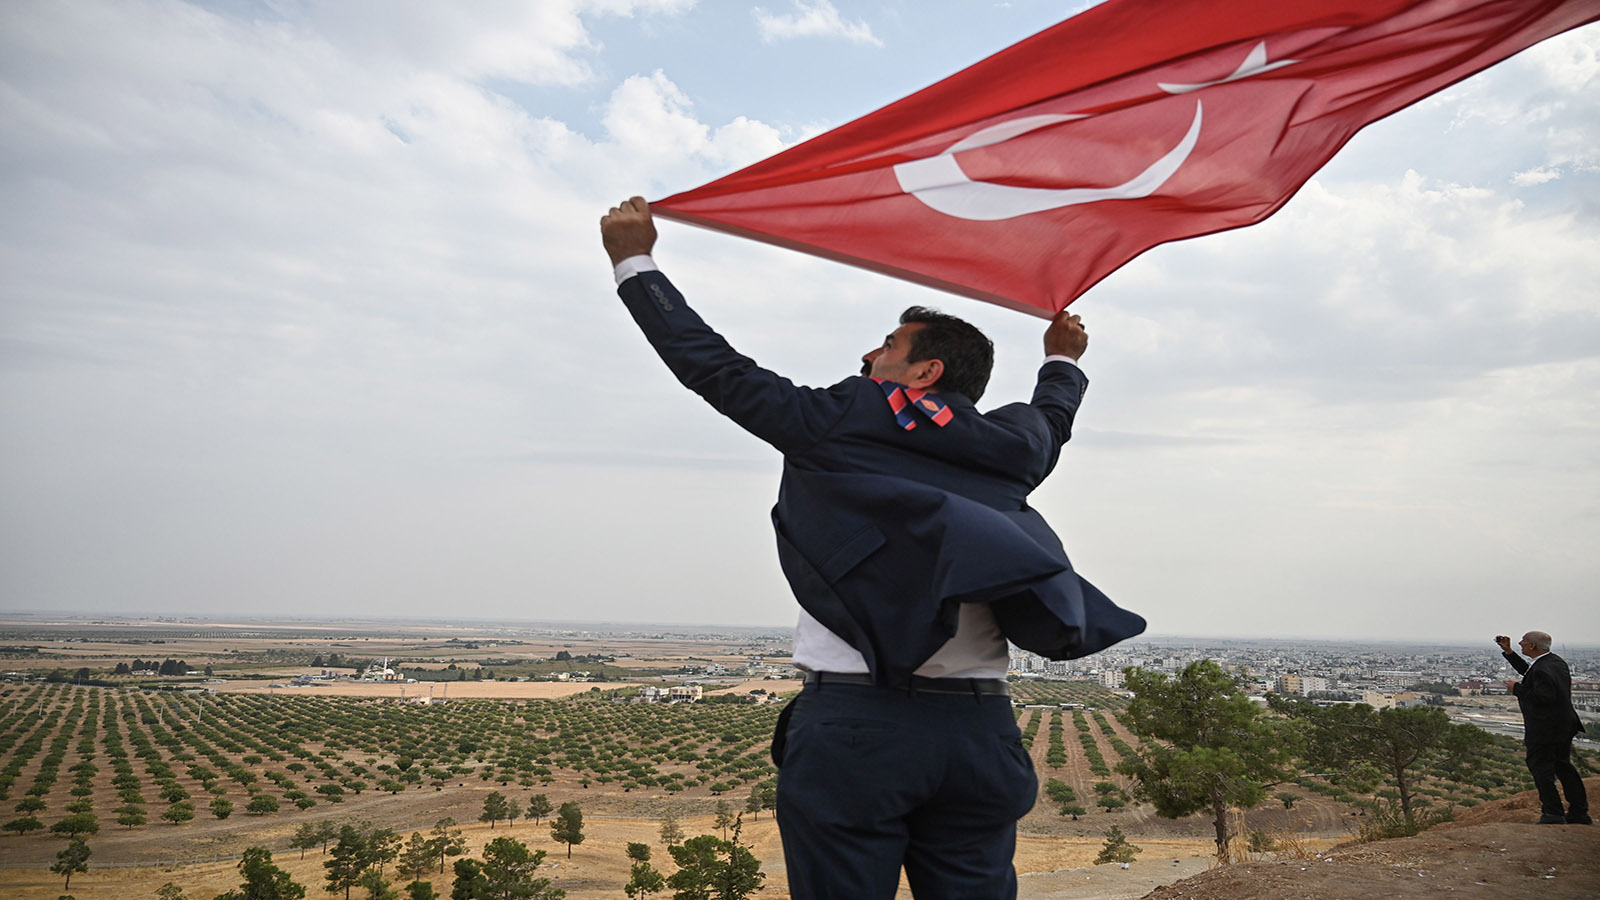 الجنسية التركية الاستثنائية: ما مصير السوريين "جماعة الرابعة"؟